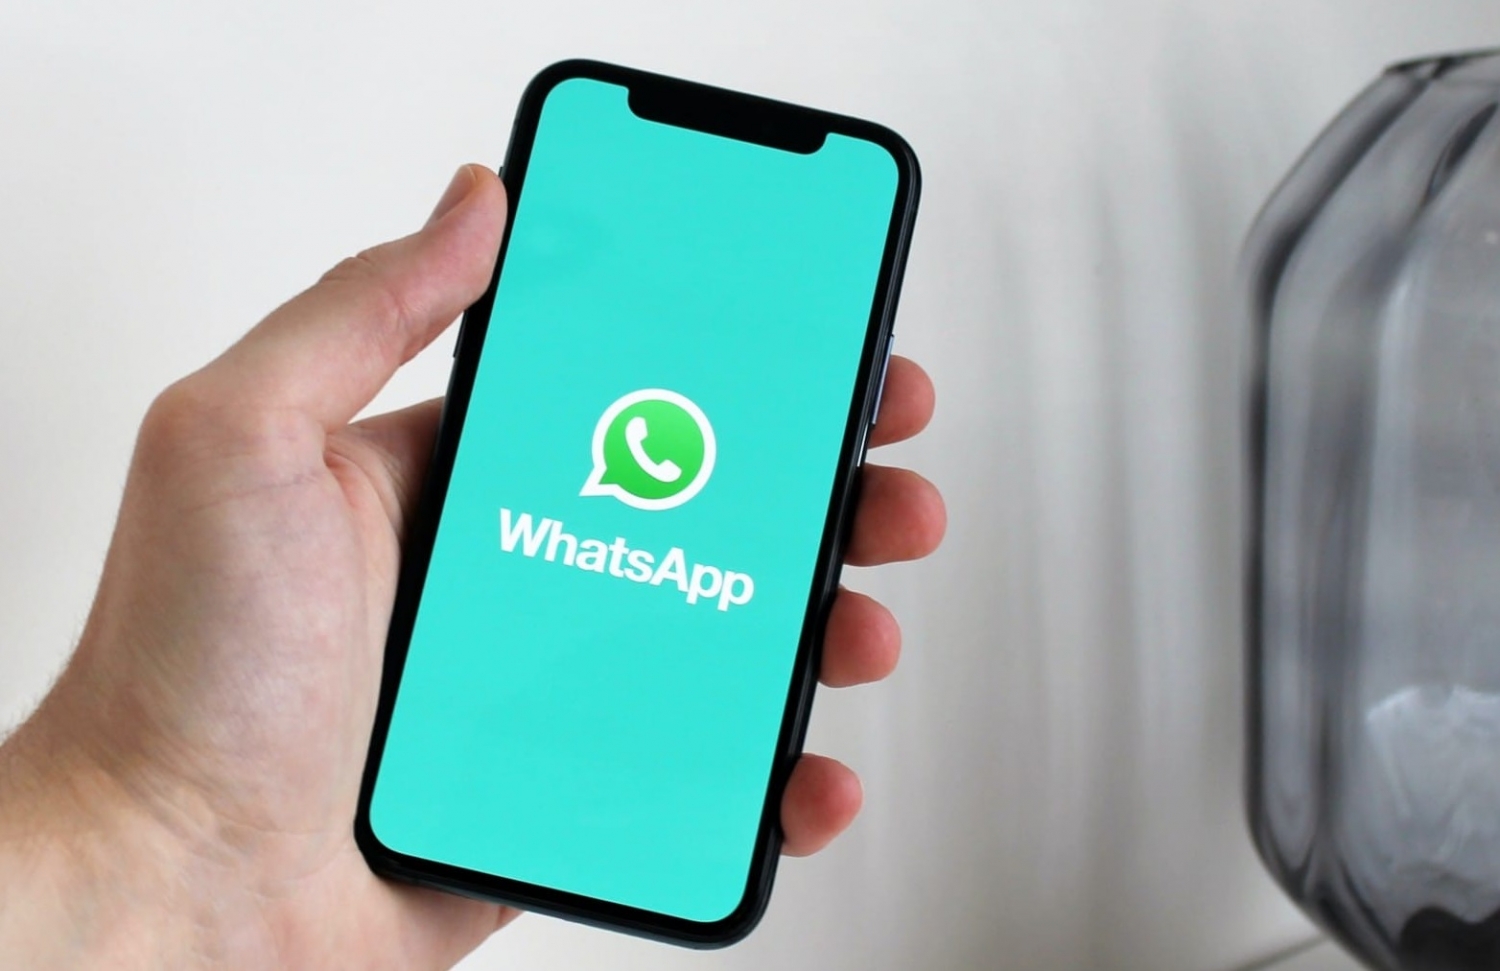 WhatsApp cập nhật thêm nhiều tính năng bảo mật quyền riêng tư cho người dùng